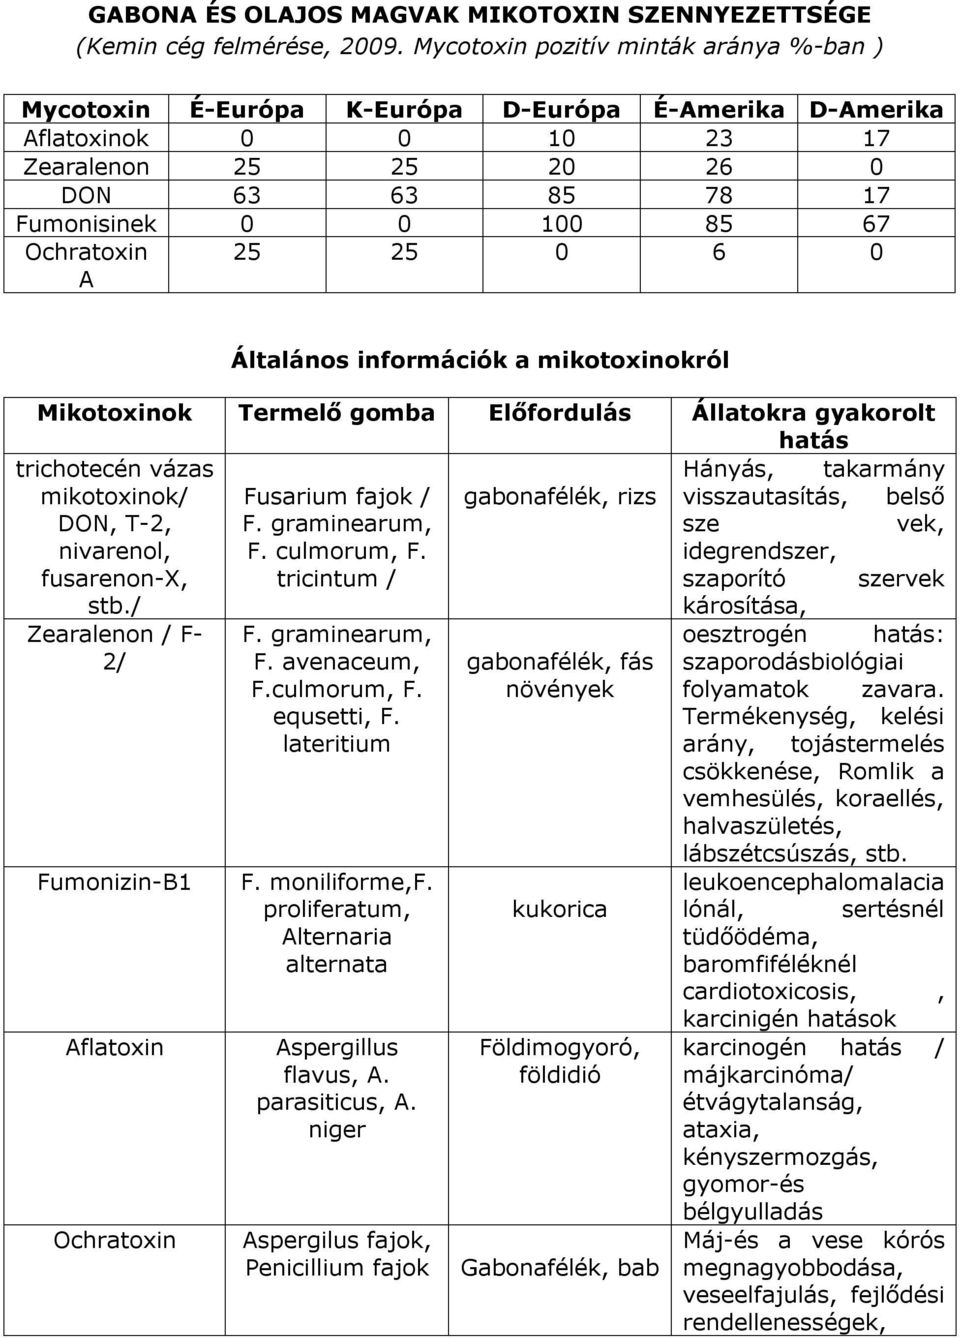 Ochratoxin A 25 25 0 6 0 Általános információk a mikotoxinokról Mikotoxinok Termelő gomba Előfordulás Állatokra gyakorolt hatás trichotecén vázas Hányás, takarmány mikotoxinok/ Fusarium fajok /